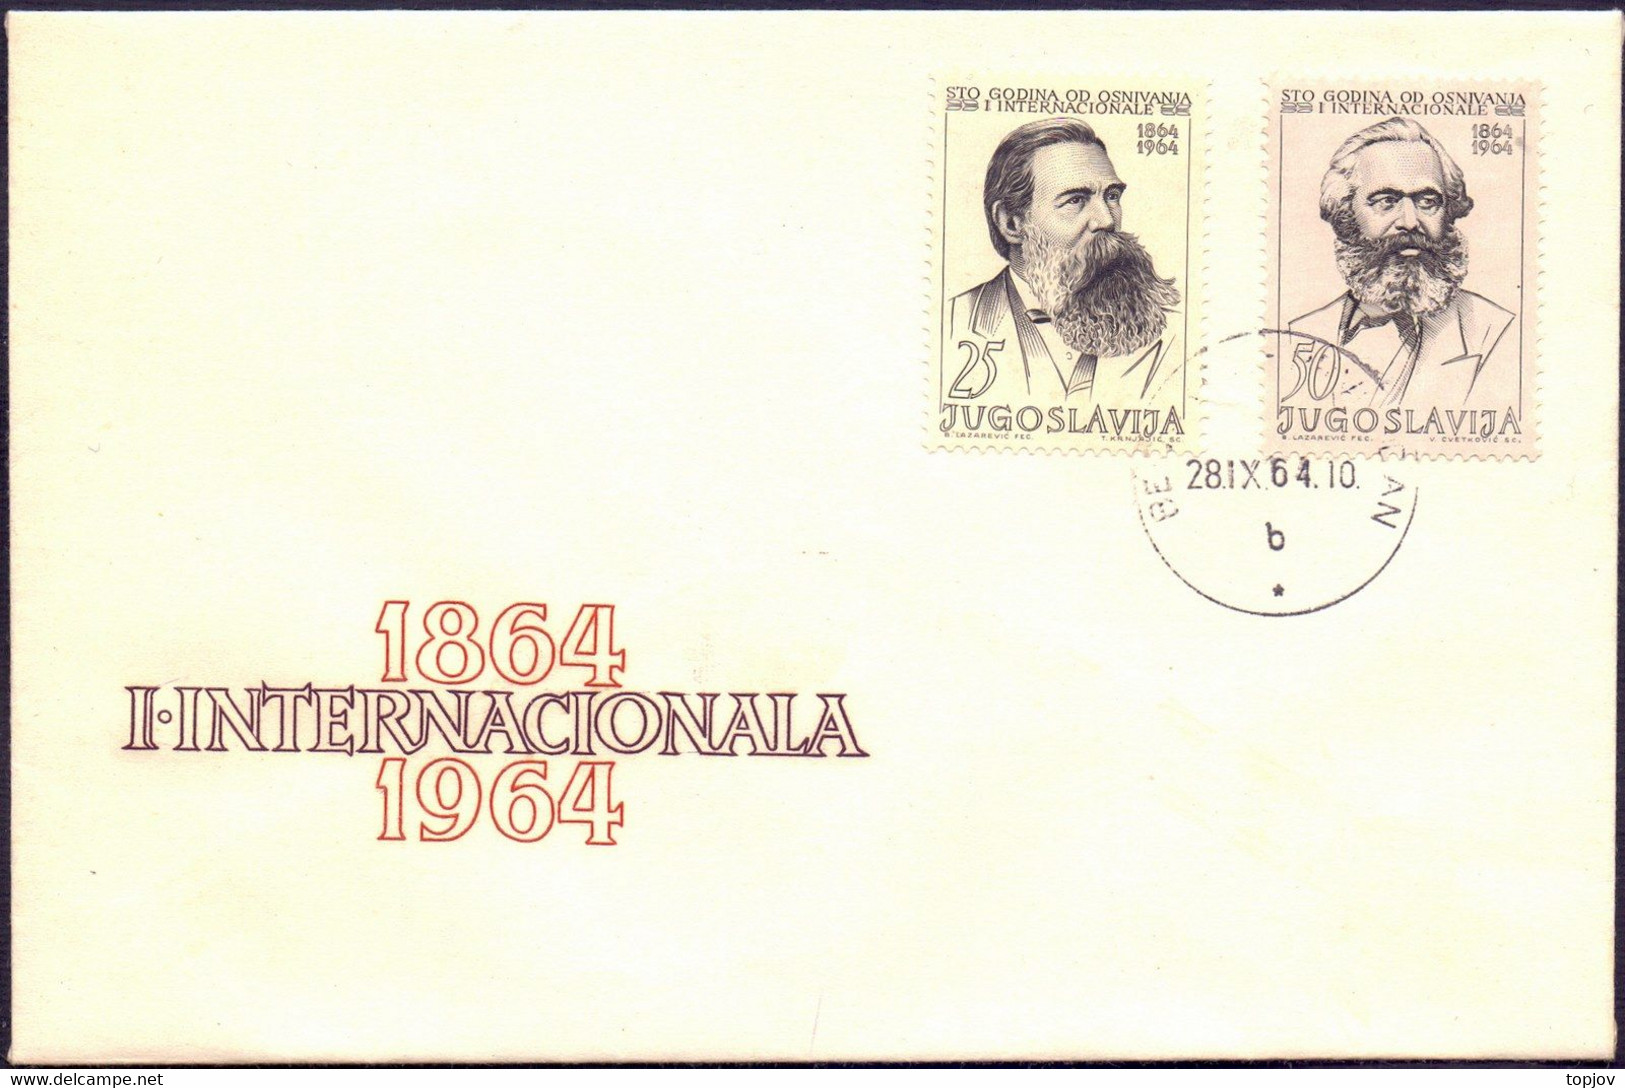 JUGOSLAVIA - SOCIALIST INTERNATIONAL - KARL MARX & ENGELS - FDC - 1964 - Karl Marx